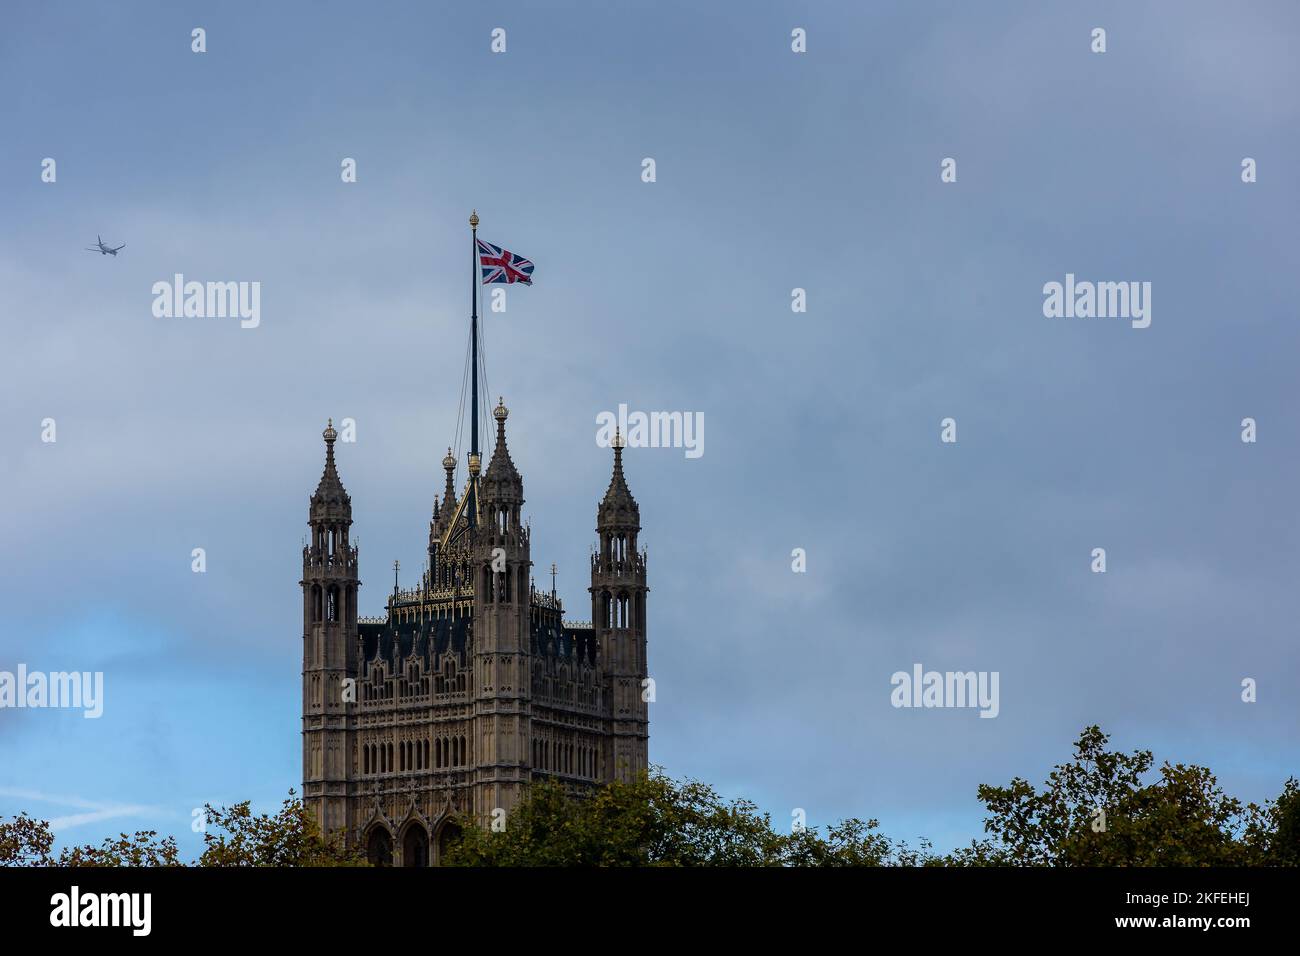 Der Palast von Westiminster in London, England (UK) - Detailansicht Stockfoto